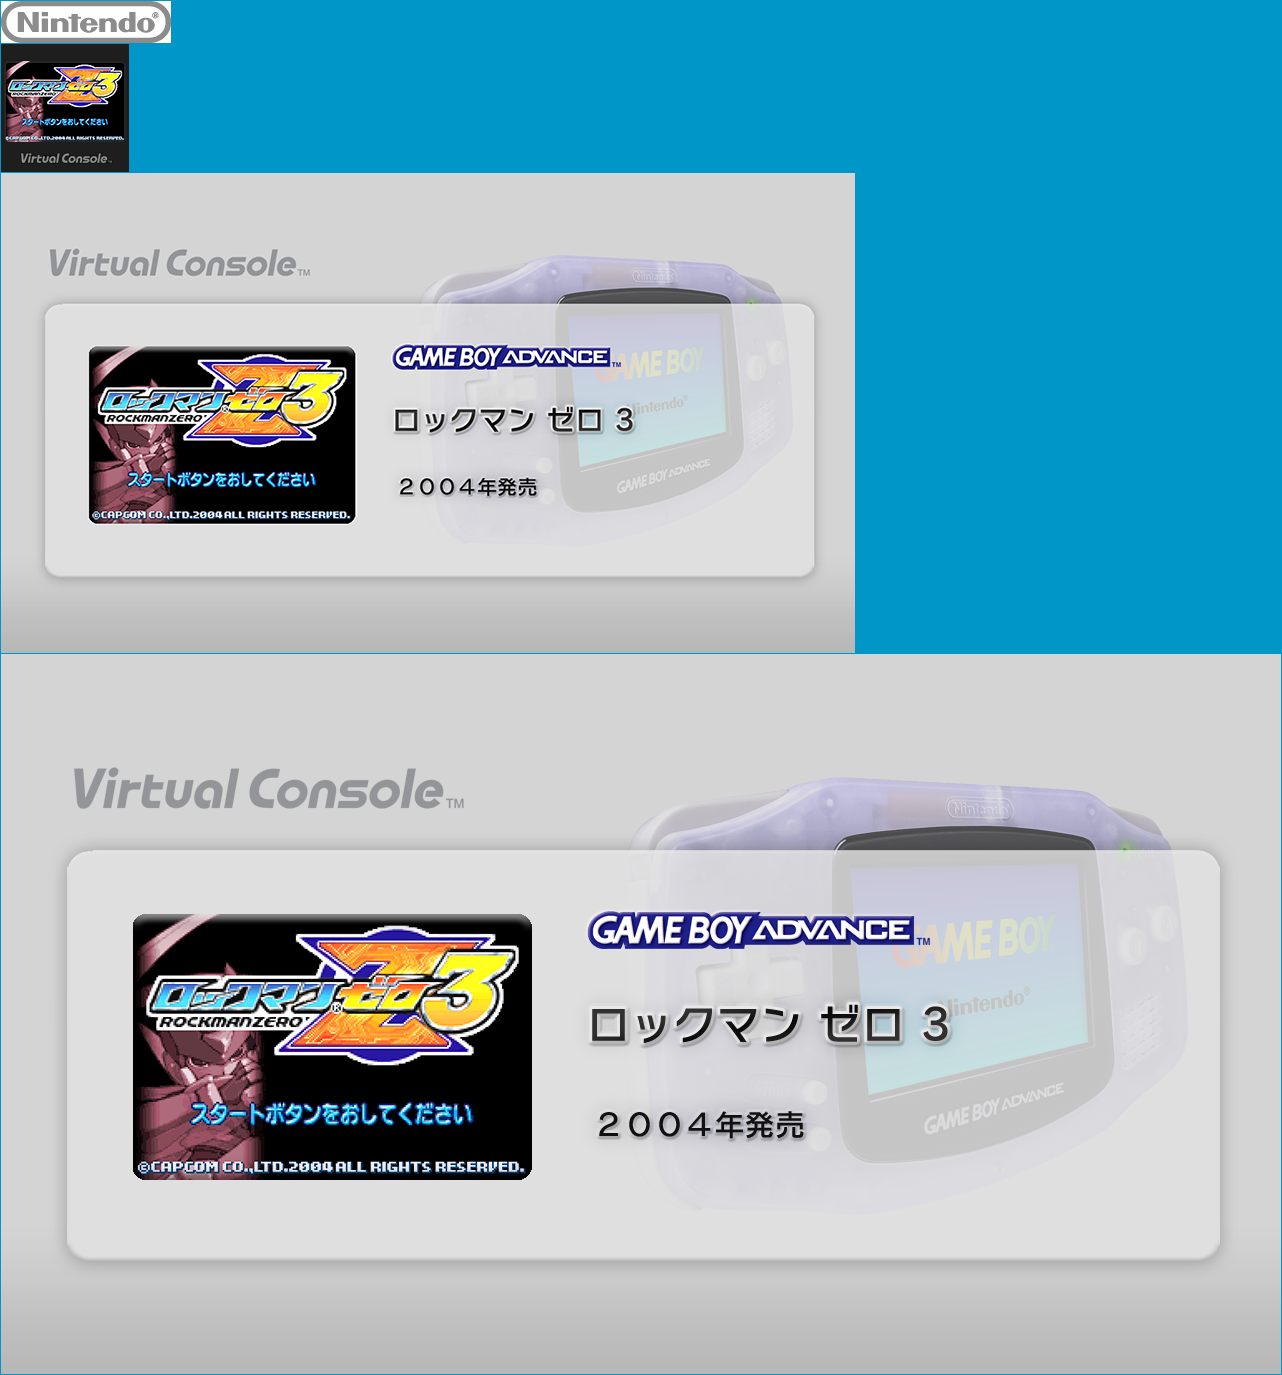 Virtual Console - Rockman Zero 3